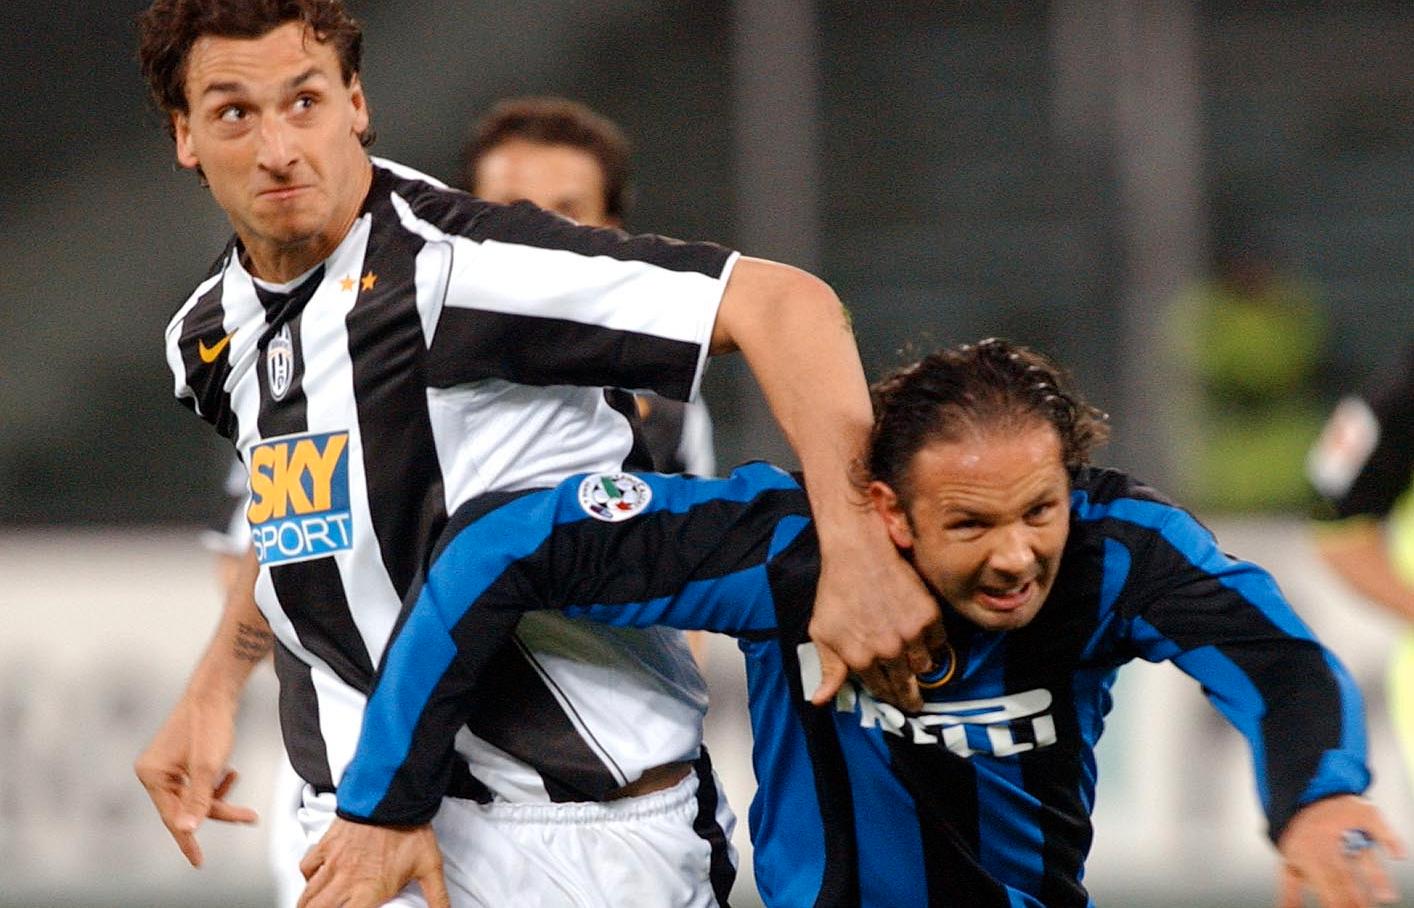 Zlatan i kamp med Sinisa Mihajlovic, då i Inter, år 2005. 